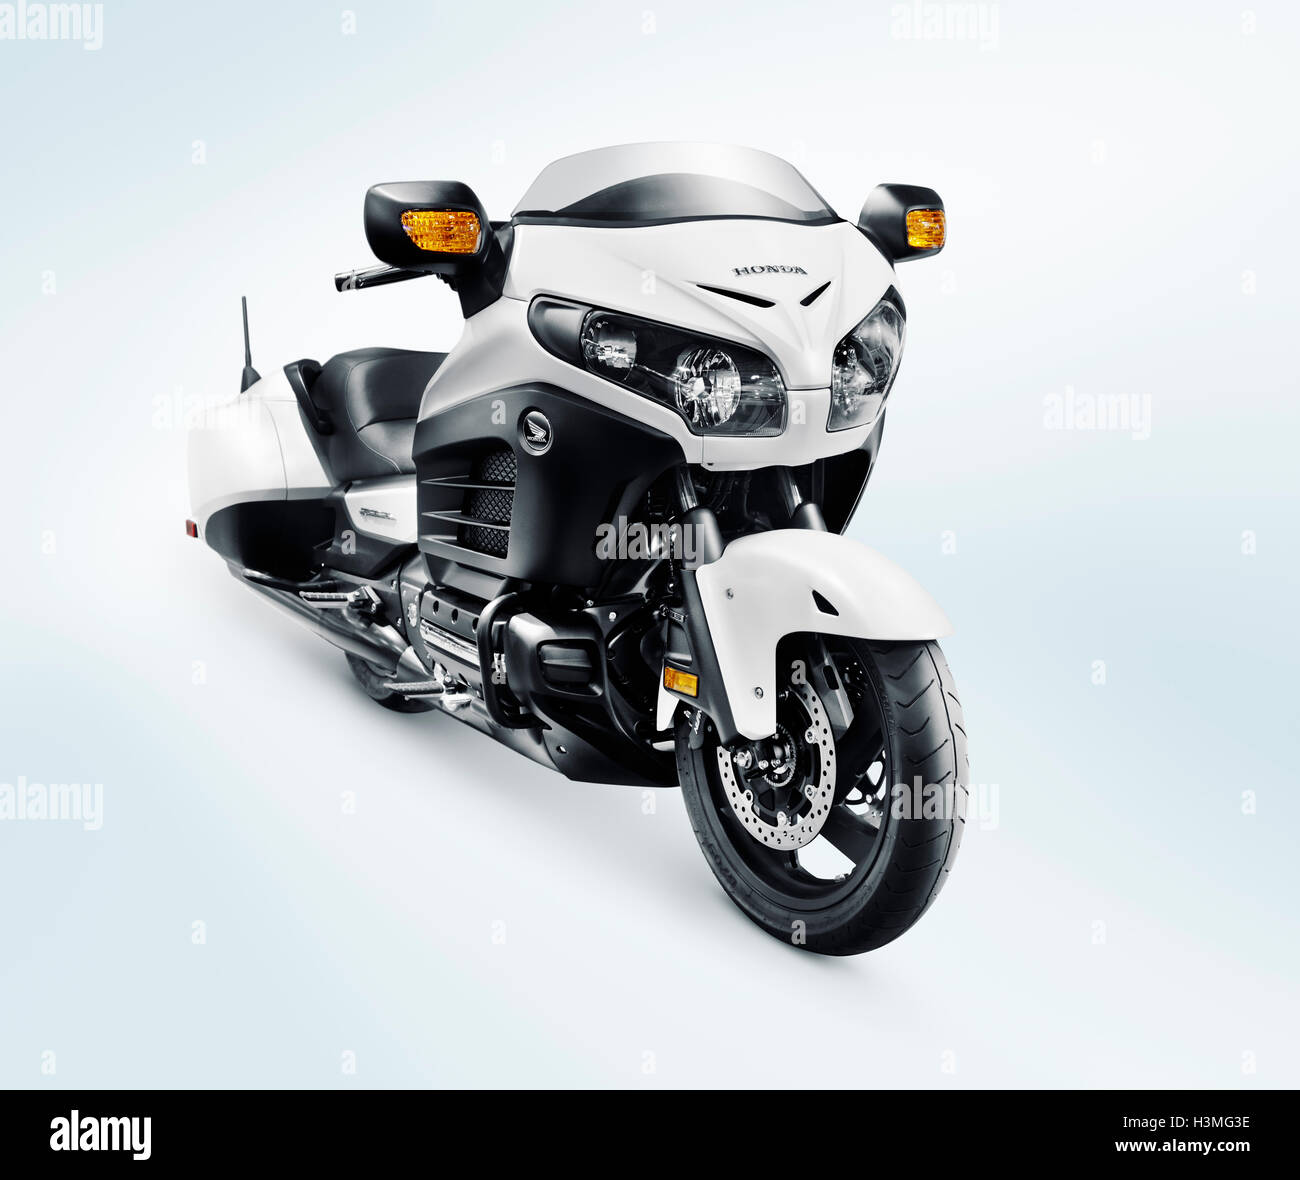 Honda moto : les nouveautés 2016